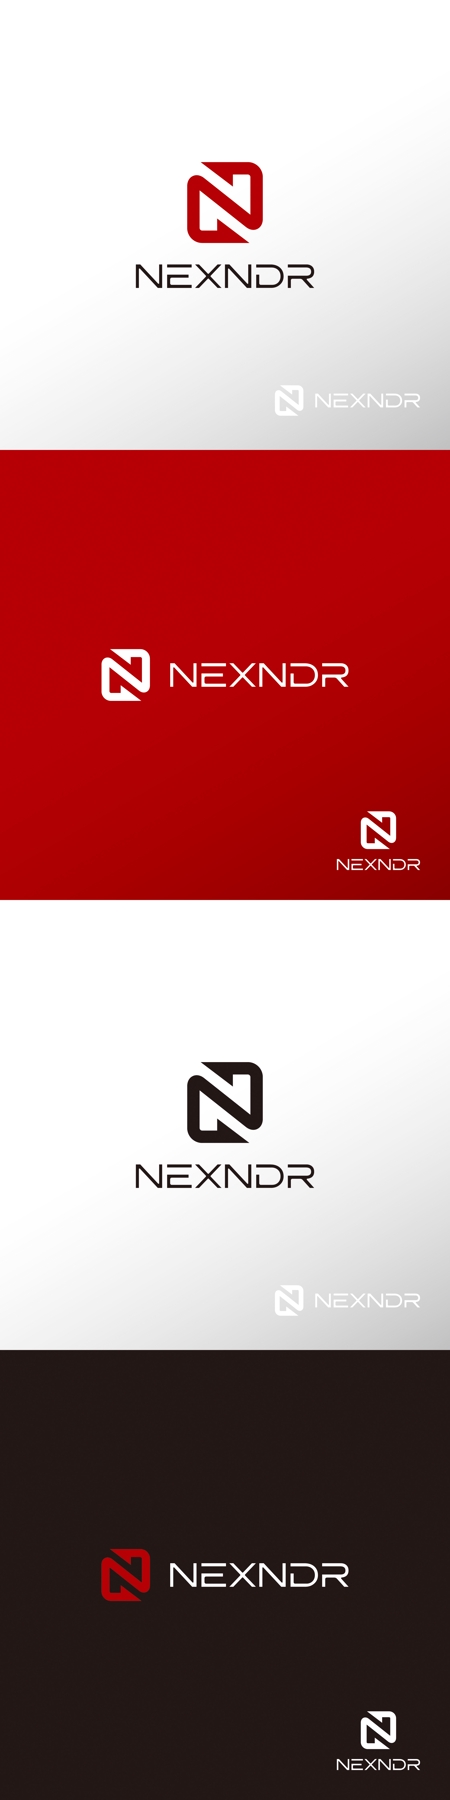 doremi (doremidesign)さんのPC、Android画面の録画アプリケーション「NEXNDR」のロゴへの提案